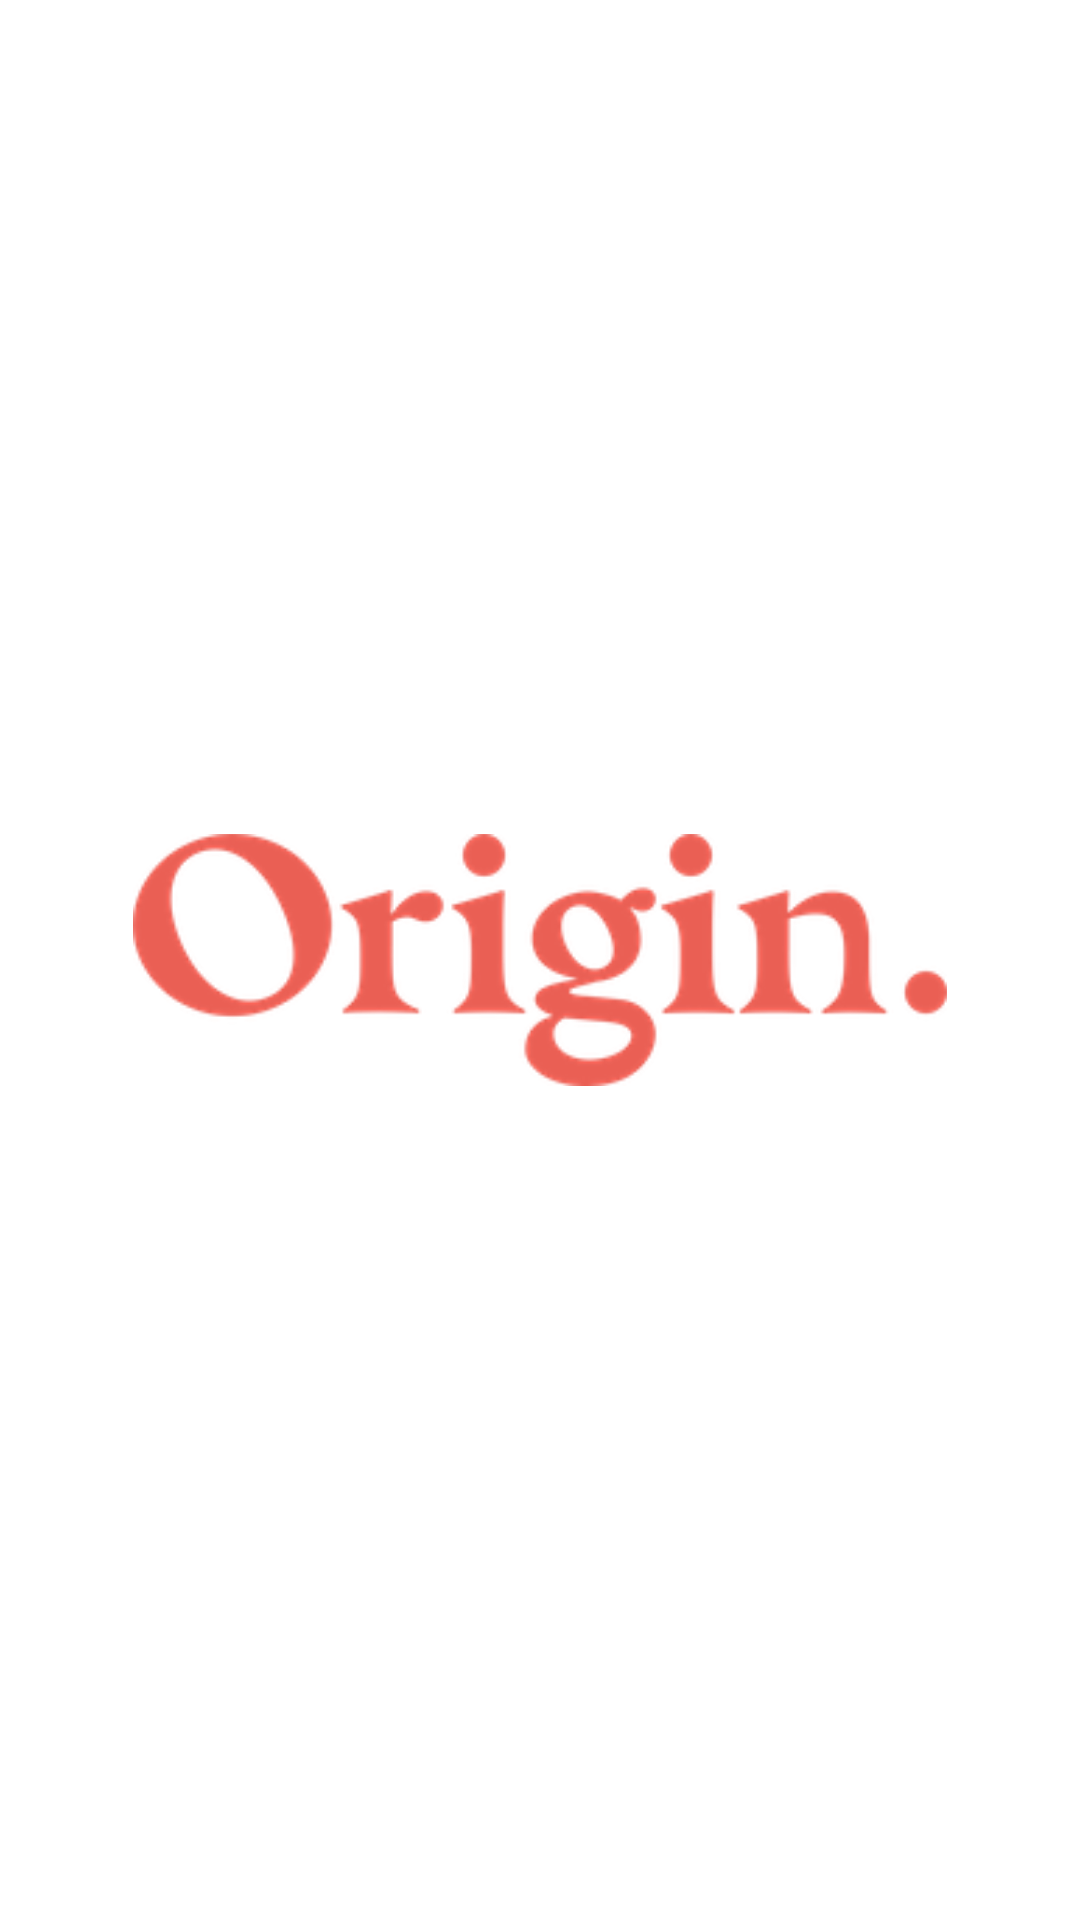 Origin-.-image